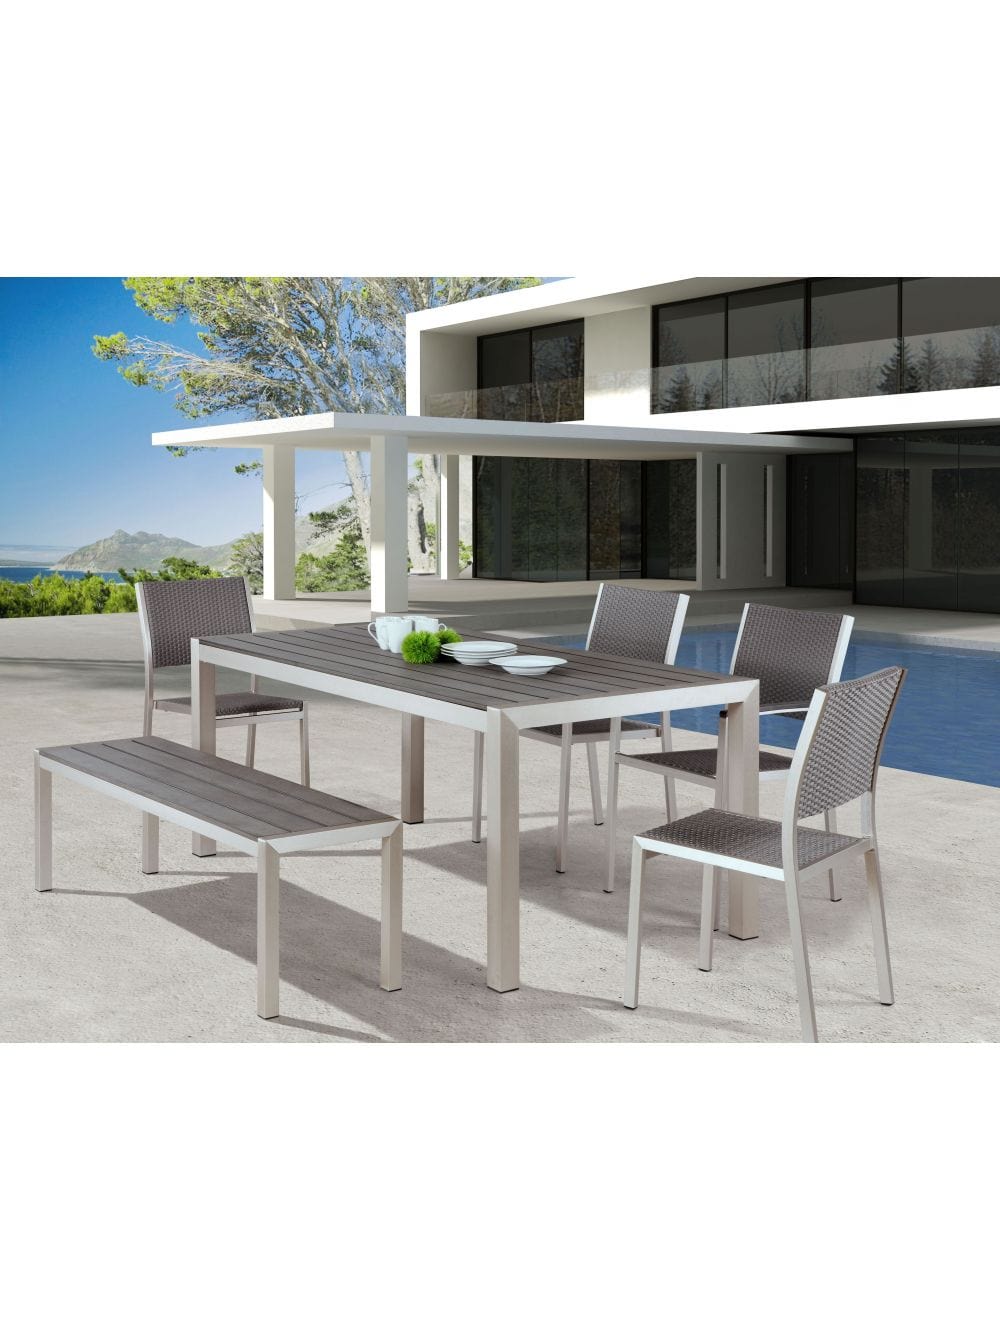 ZOU Outdoor Dining Seating ZOU - Metropolitan Double Bench Gray & Silver | 701862